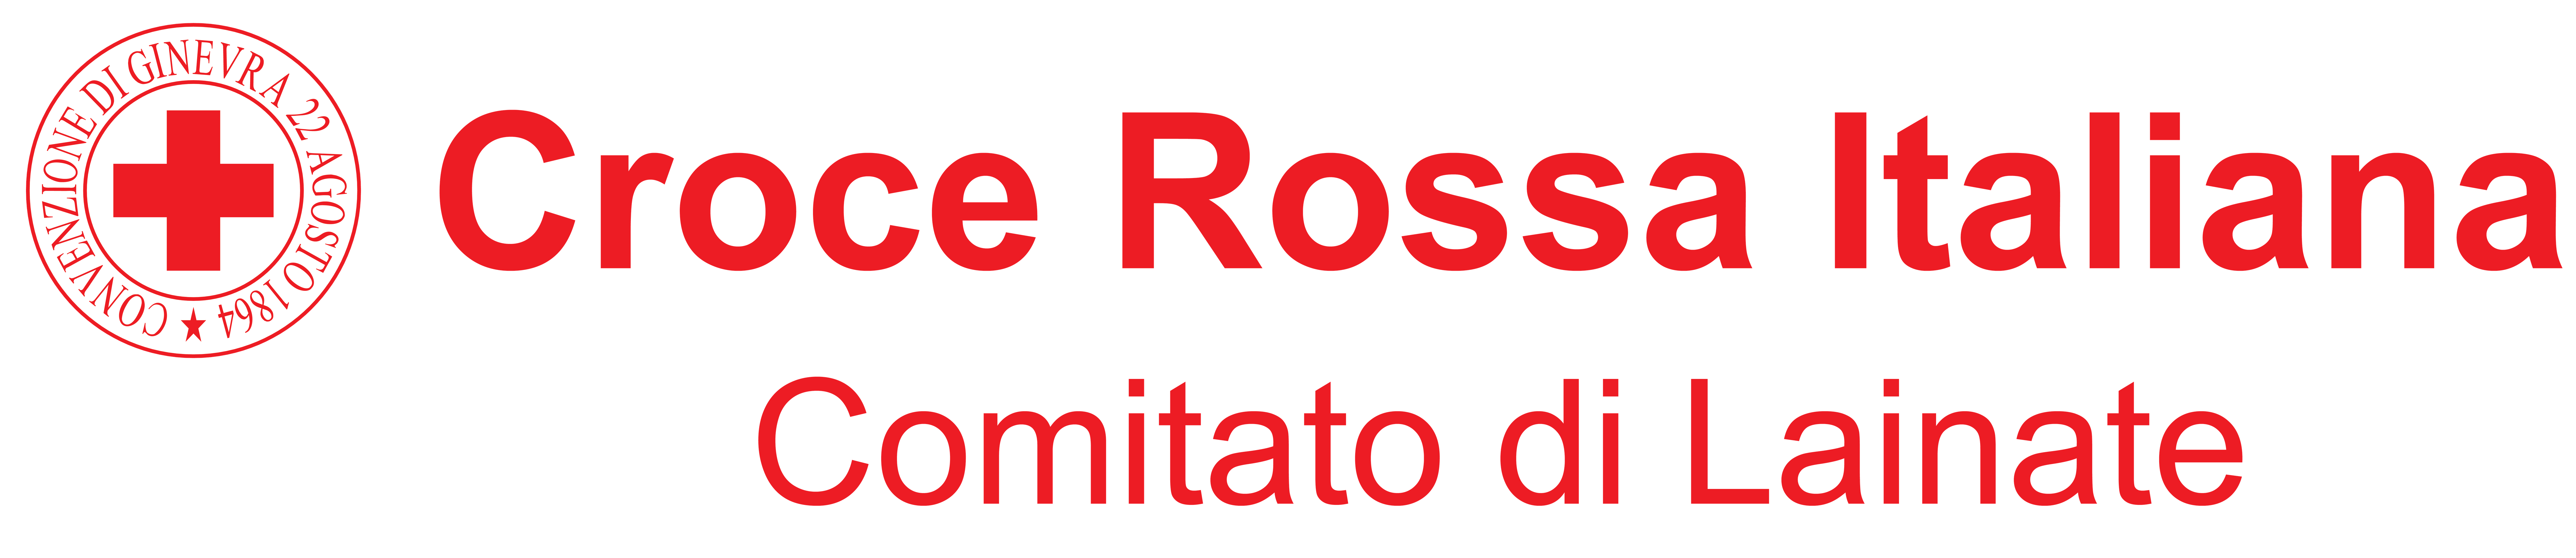 Croce Rossa Italiana - Comitato di Lainate